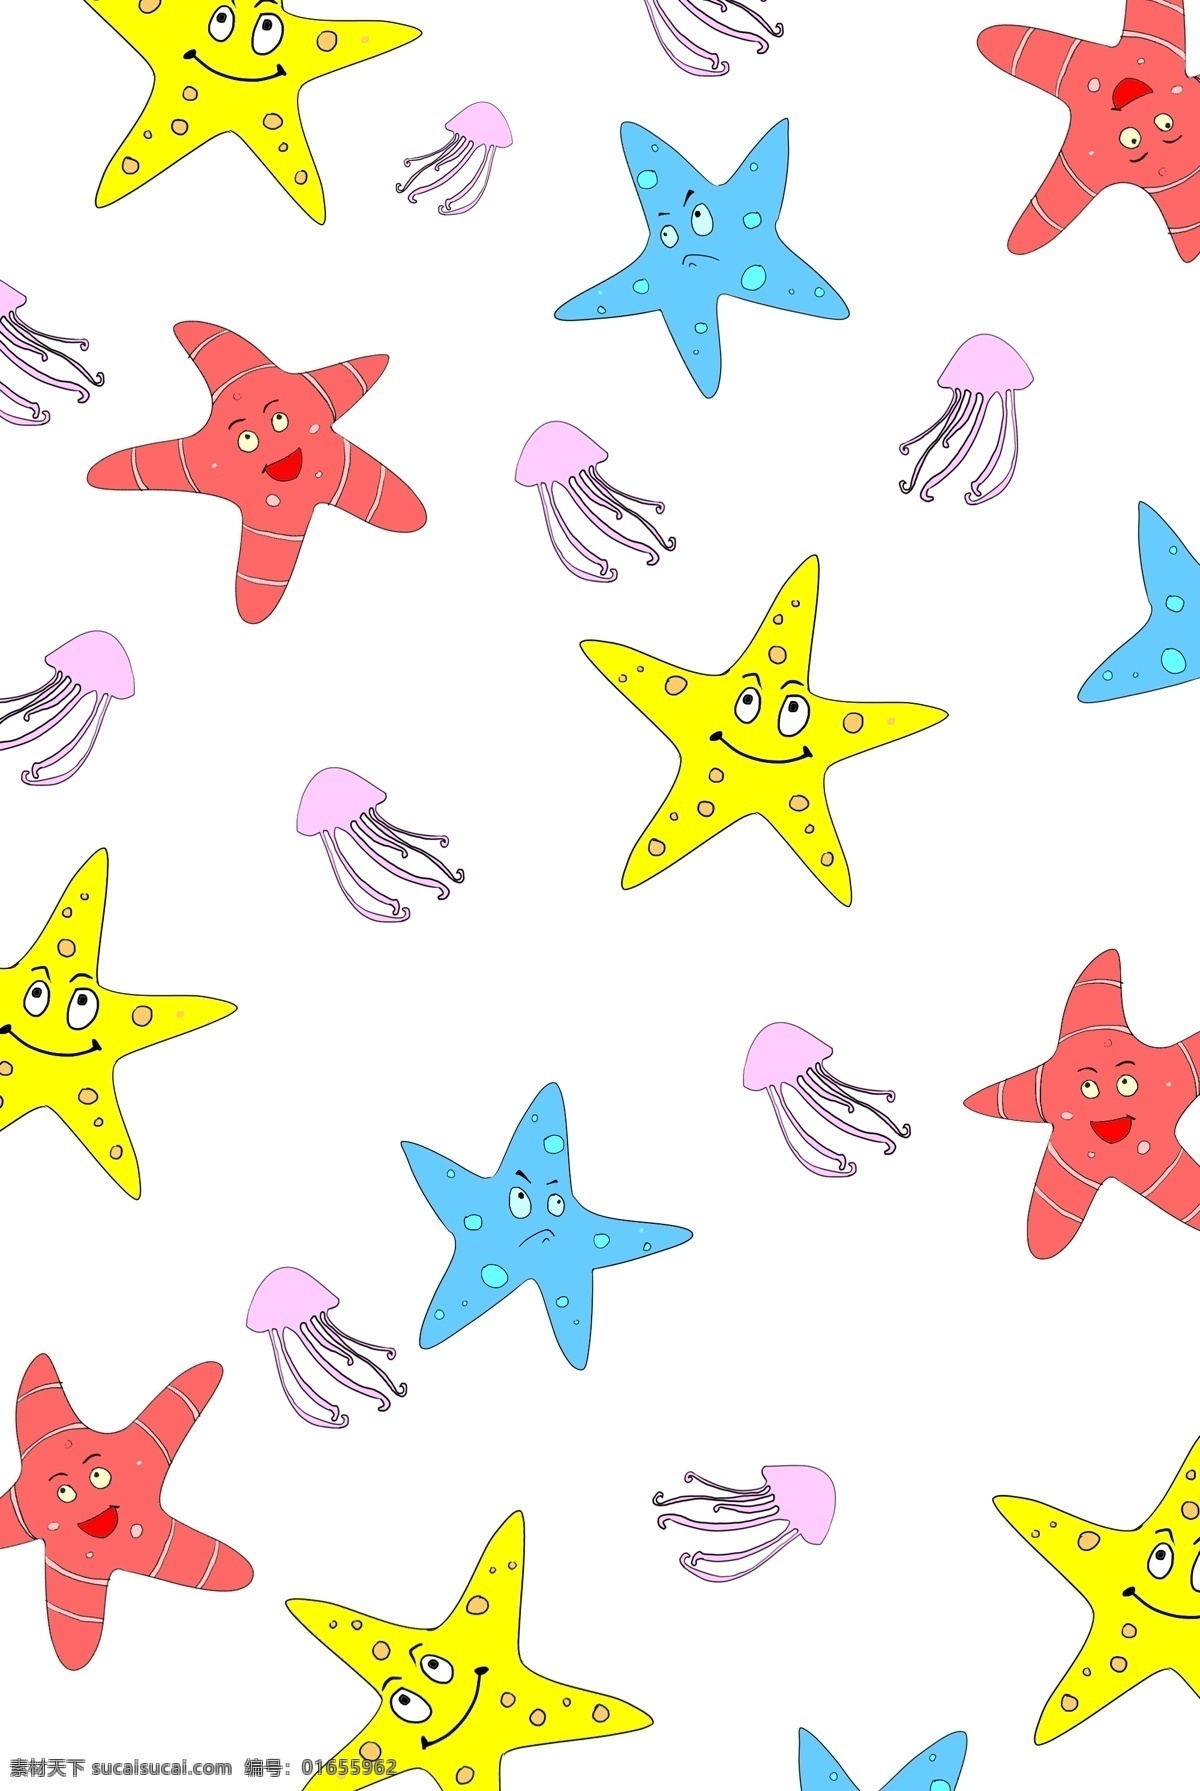 海洋生物 背景 插画 海星 水母 黄色海星 海洋生物背景 海星背景 彩色水母背景